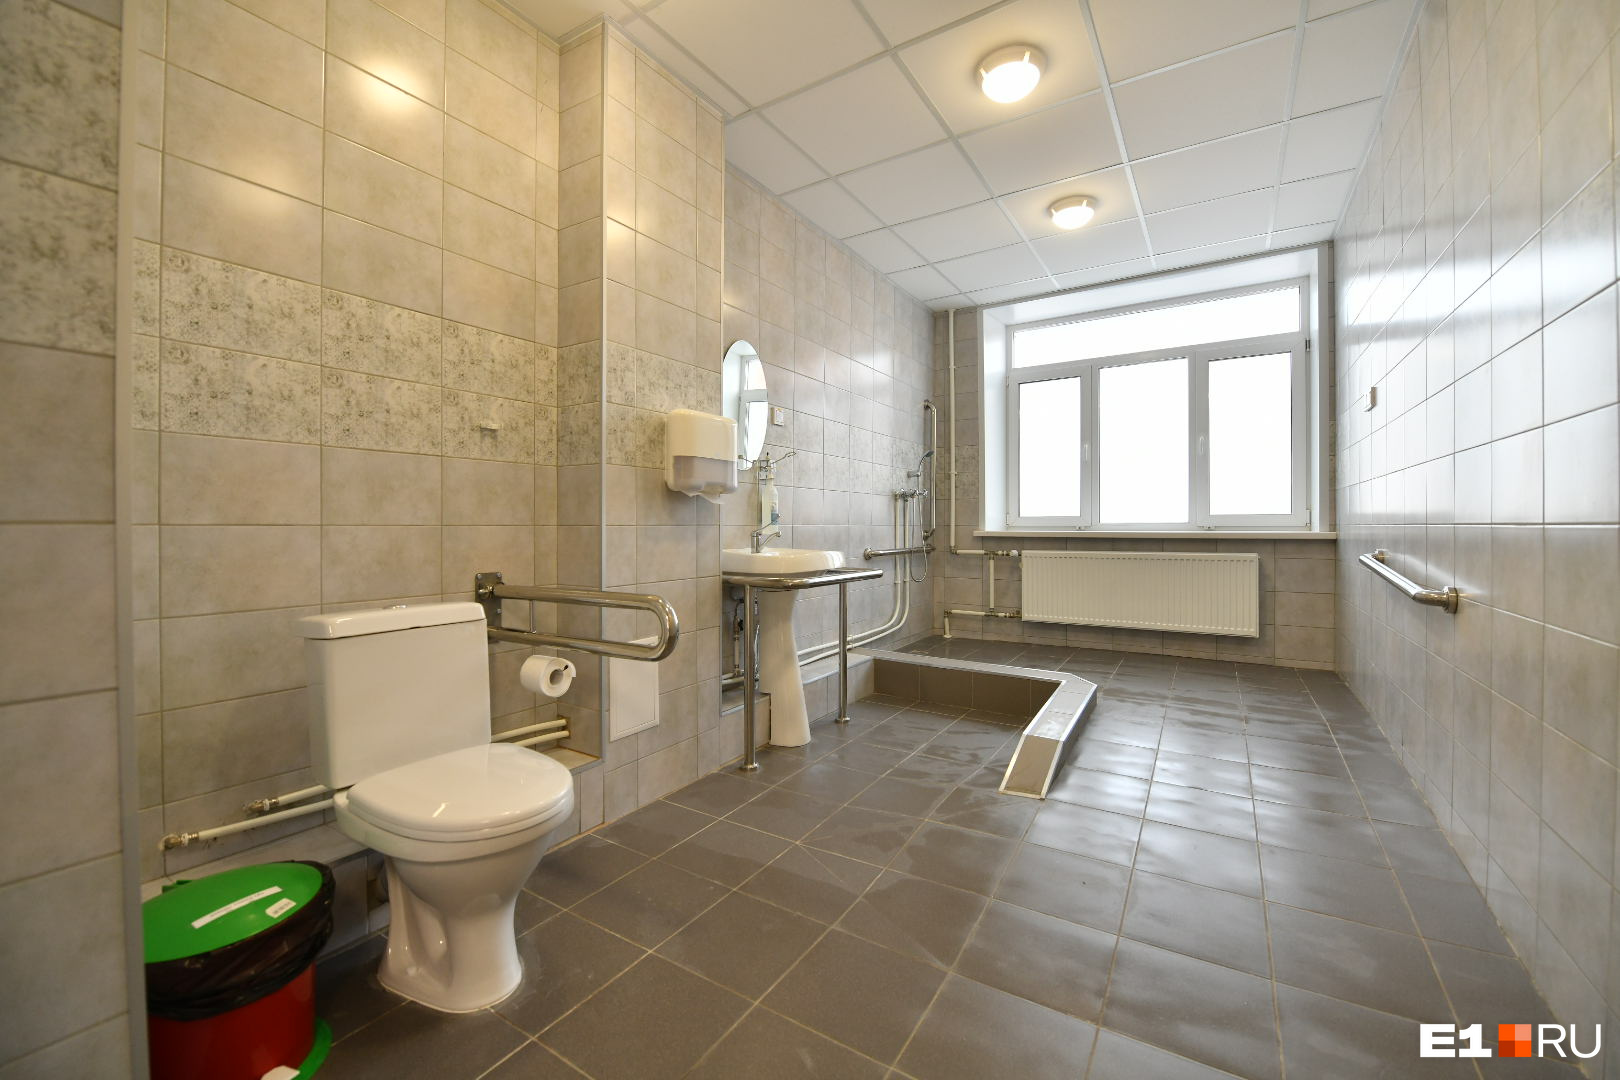 В ОДКБ ванная комната адаптирована для детей с ограниченными возможностями здоровья